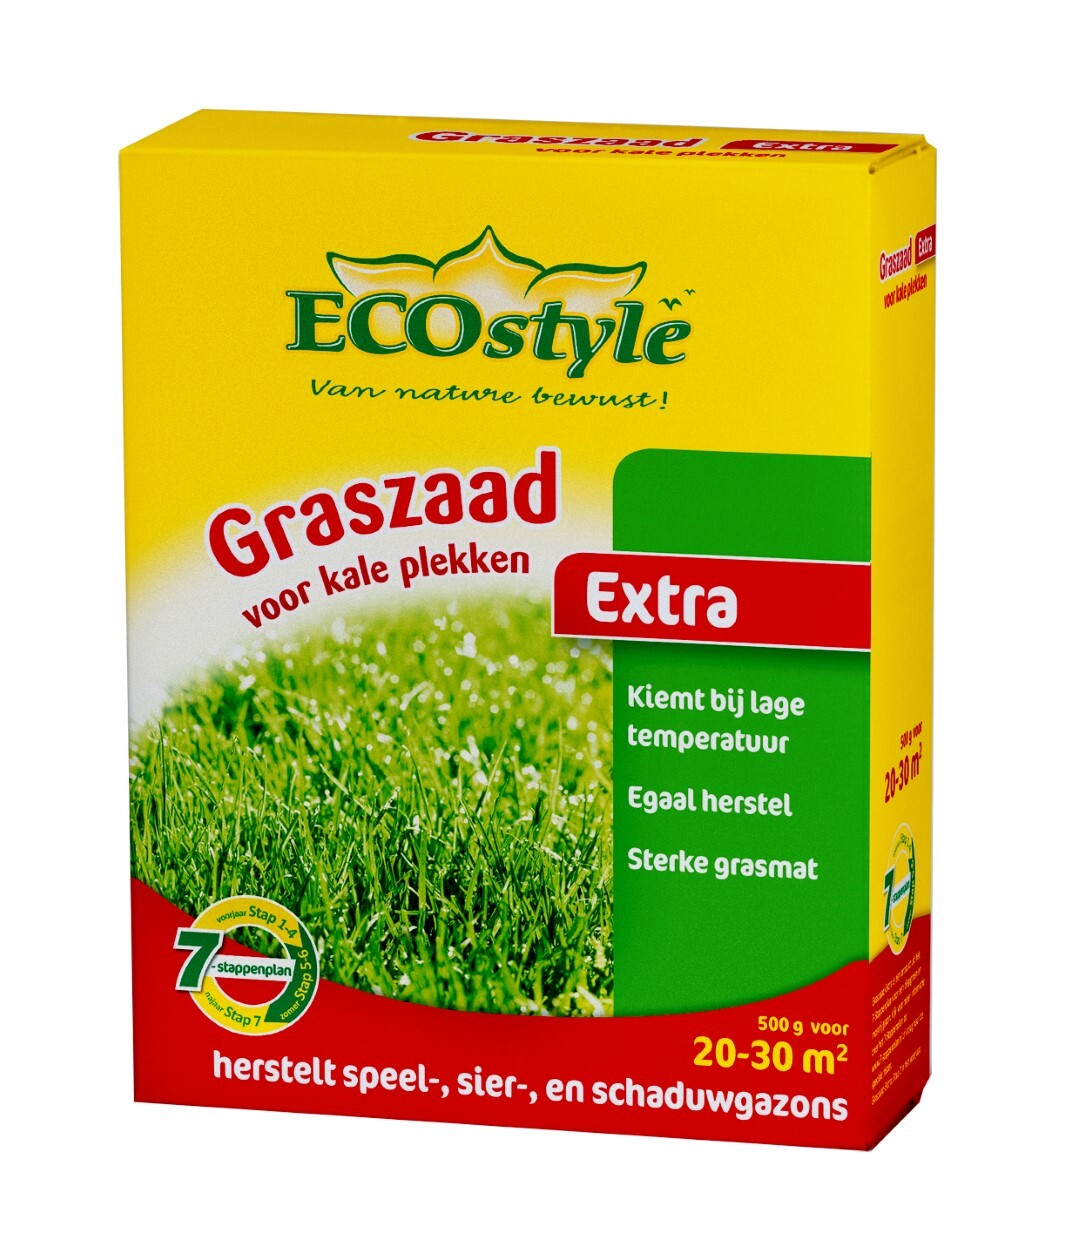 ECOSTYLE Graszaad-Extra - 500 g - voor het doorzaaien van kale plekken - 20 tot 40 m2 Zaai kale plekken in met Graszaad-Extra